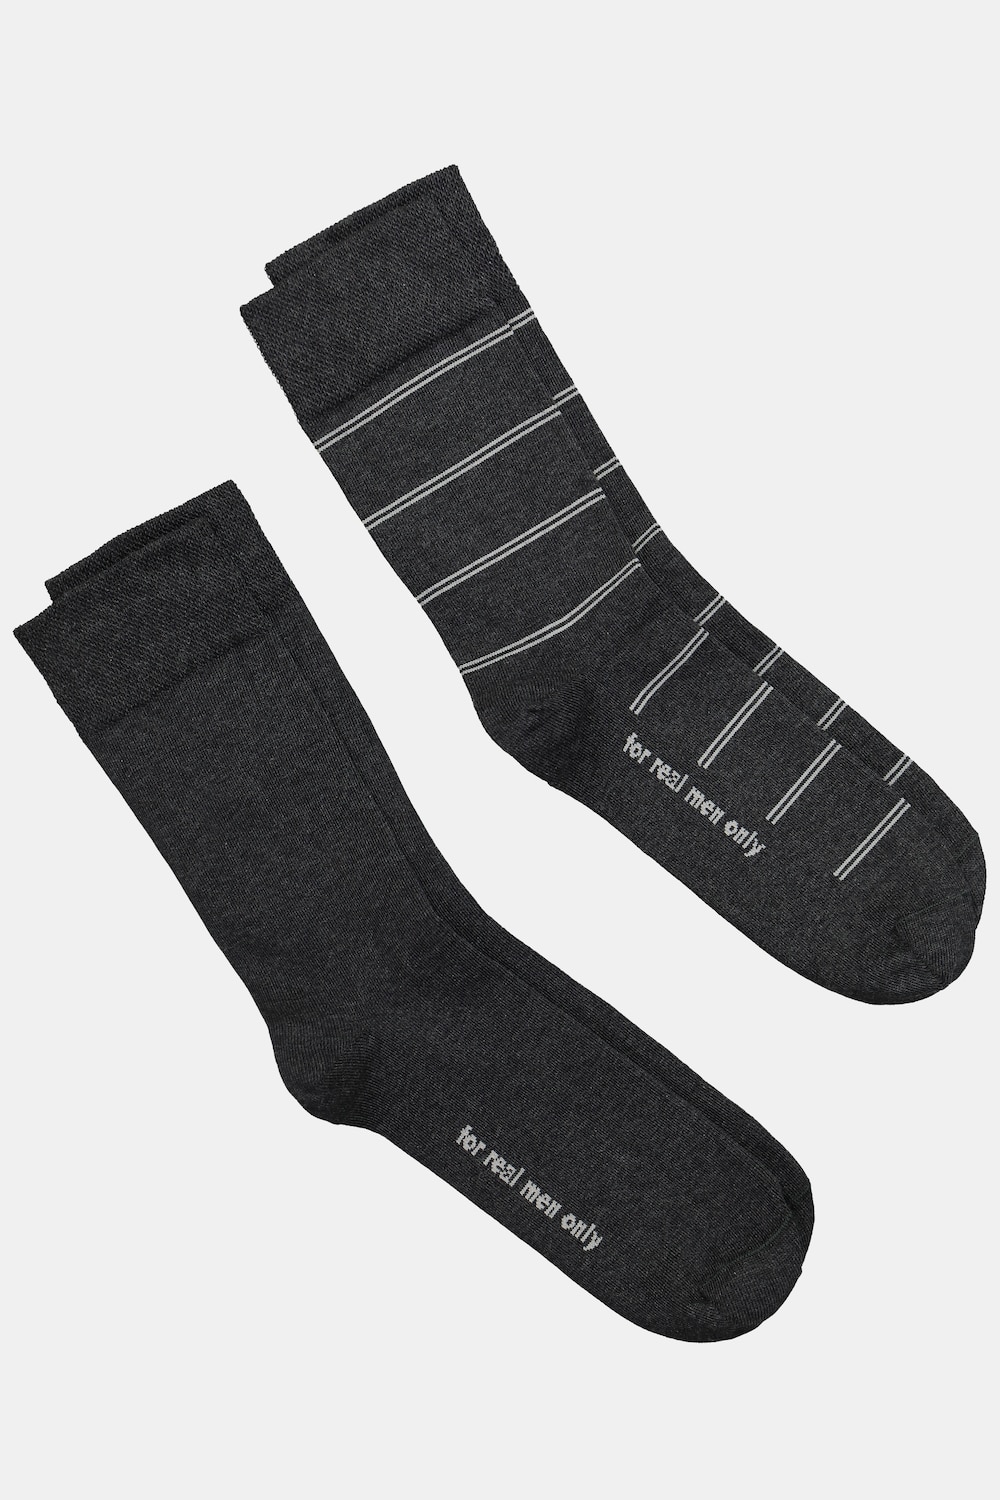 Große Größen JP1880 Socken, Herren, grau, Größe: 43-46, Baumwolle/Synthetische Fasern, JP1880 von JP1880